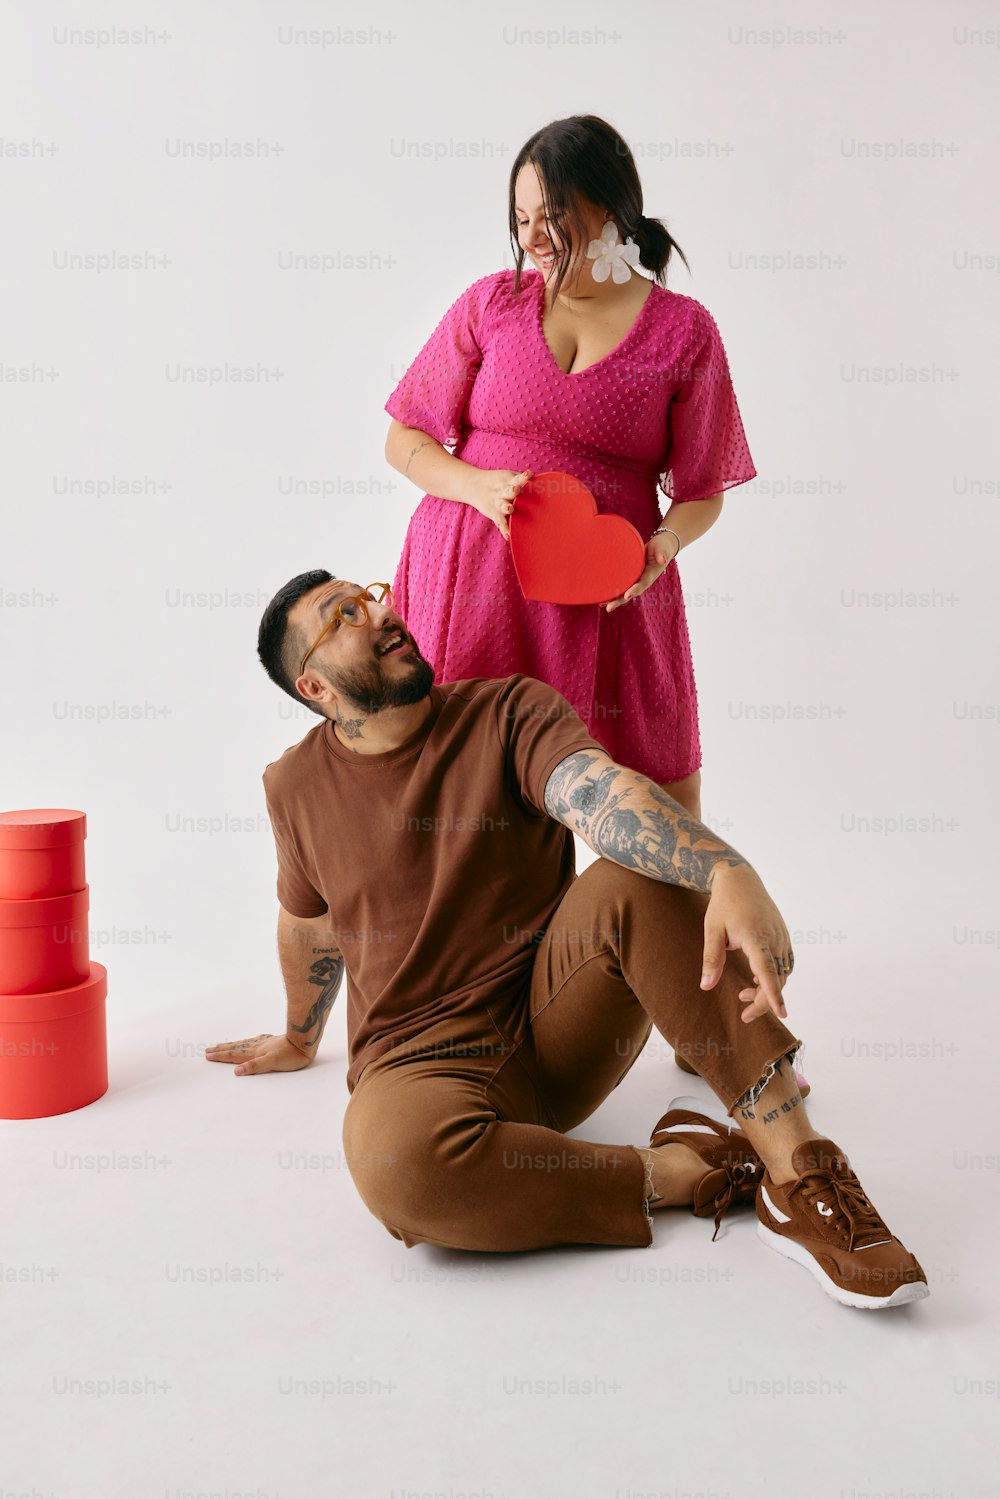 ein Mann hält eine rote Frisbee neben einer Frau